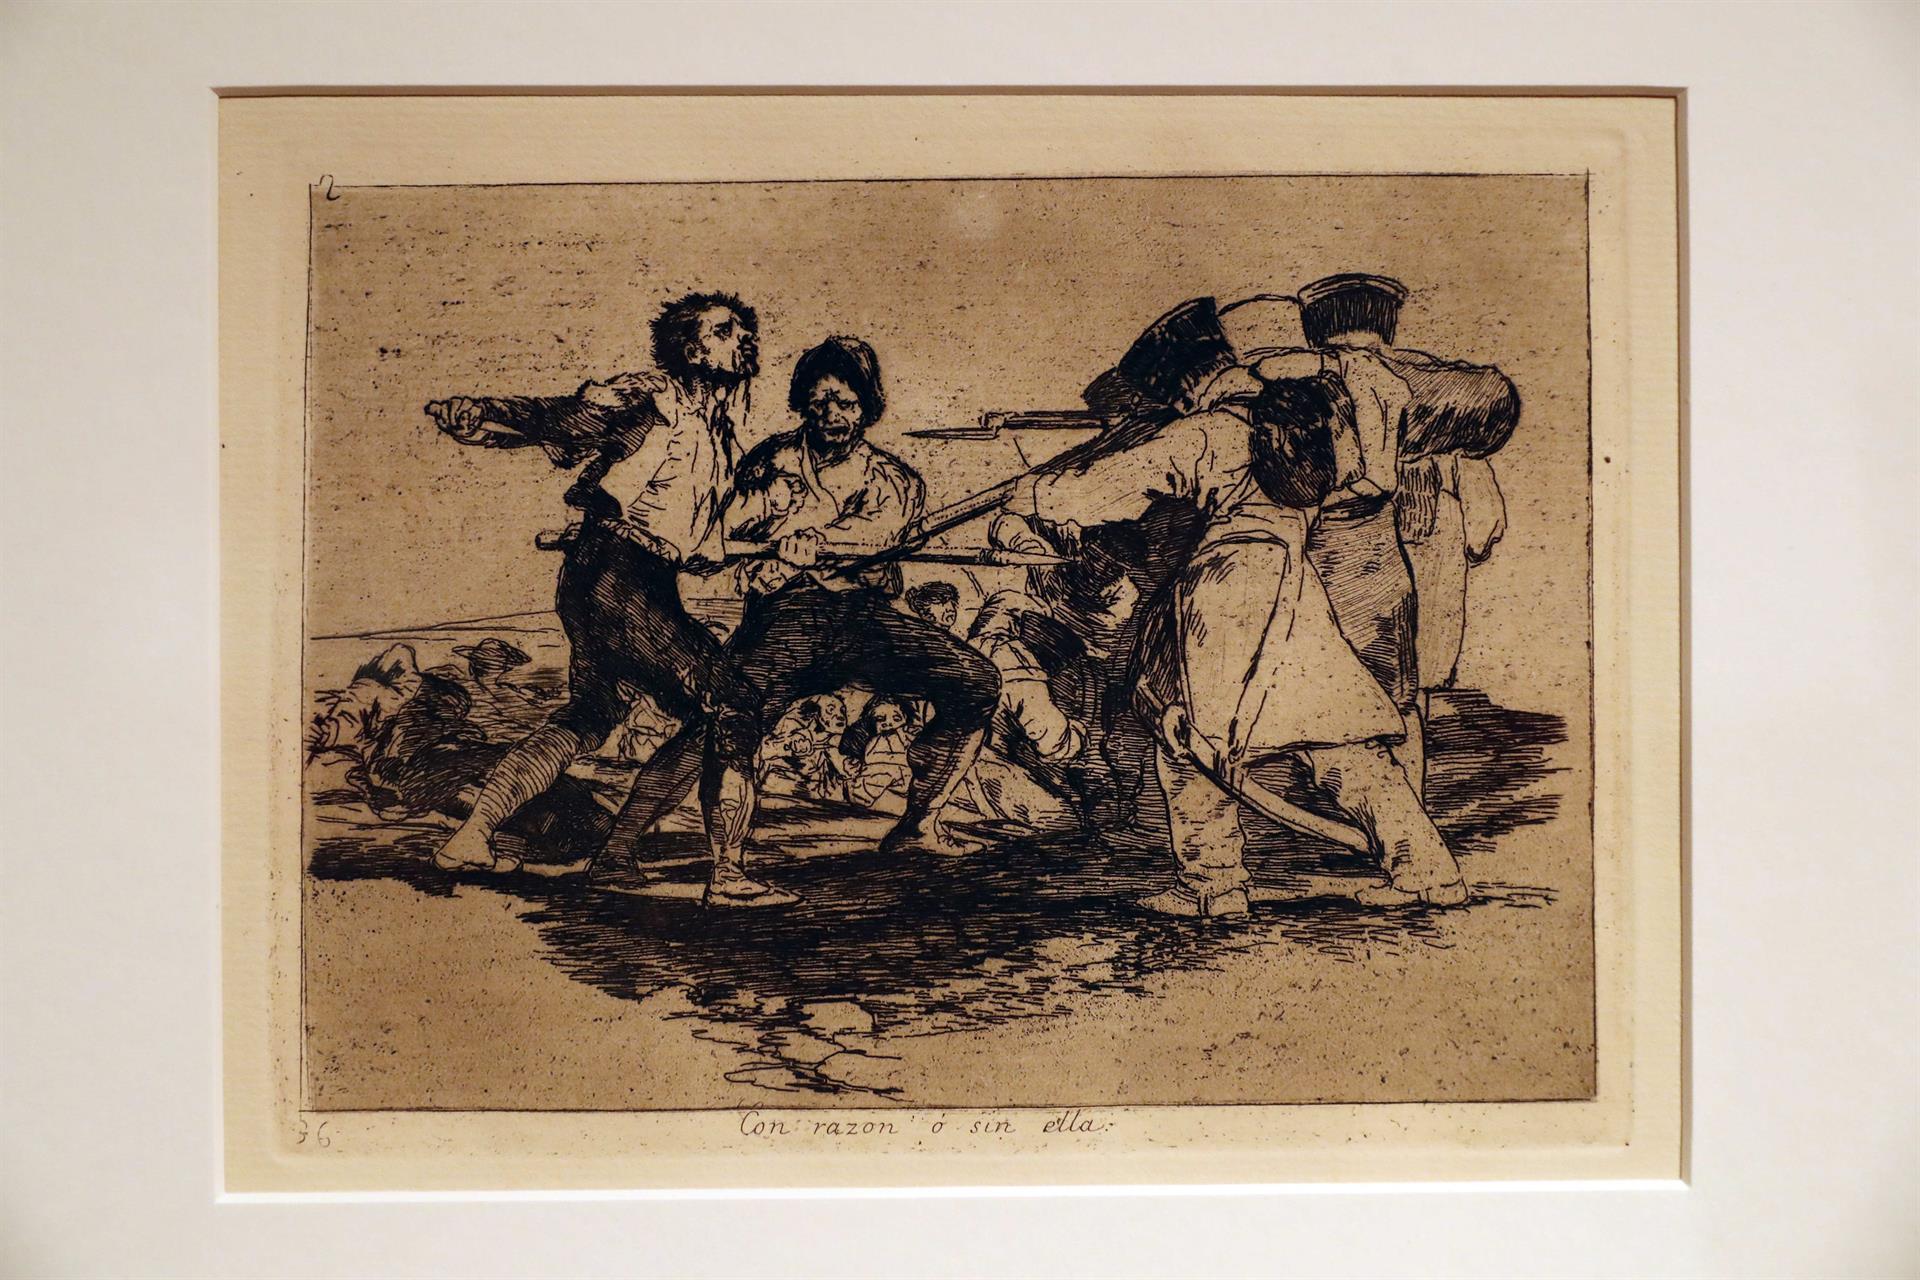 La Fundación Mapfre presentó este viernes una exposición de 80 grabados de Francisco de Goya, correspondientes a la serie "Desastres de la guerra".En la imagen, uno de los grabados, titulado "Con razón o sin ella". EFE/ Elvira Urquijo A.